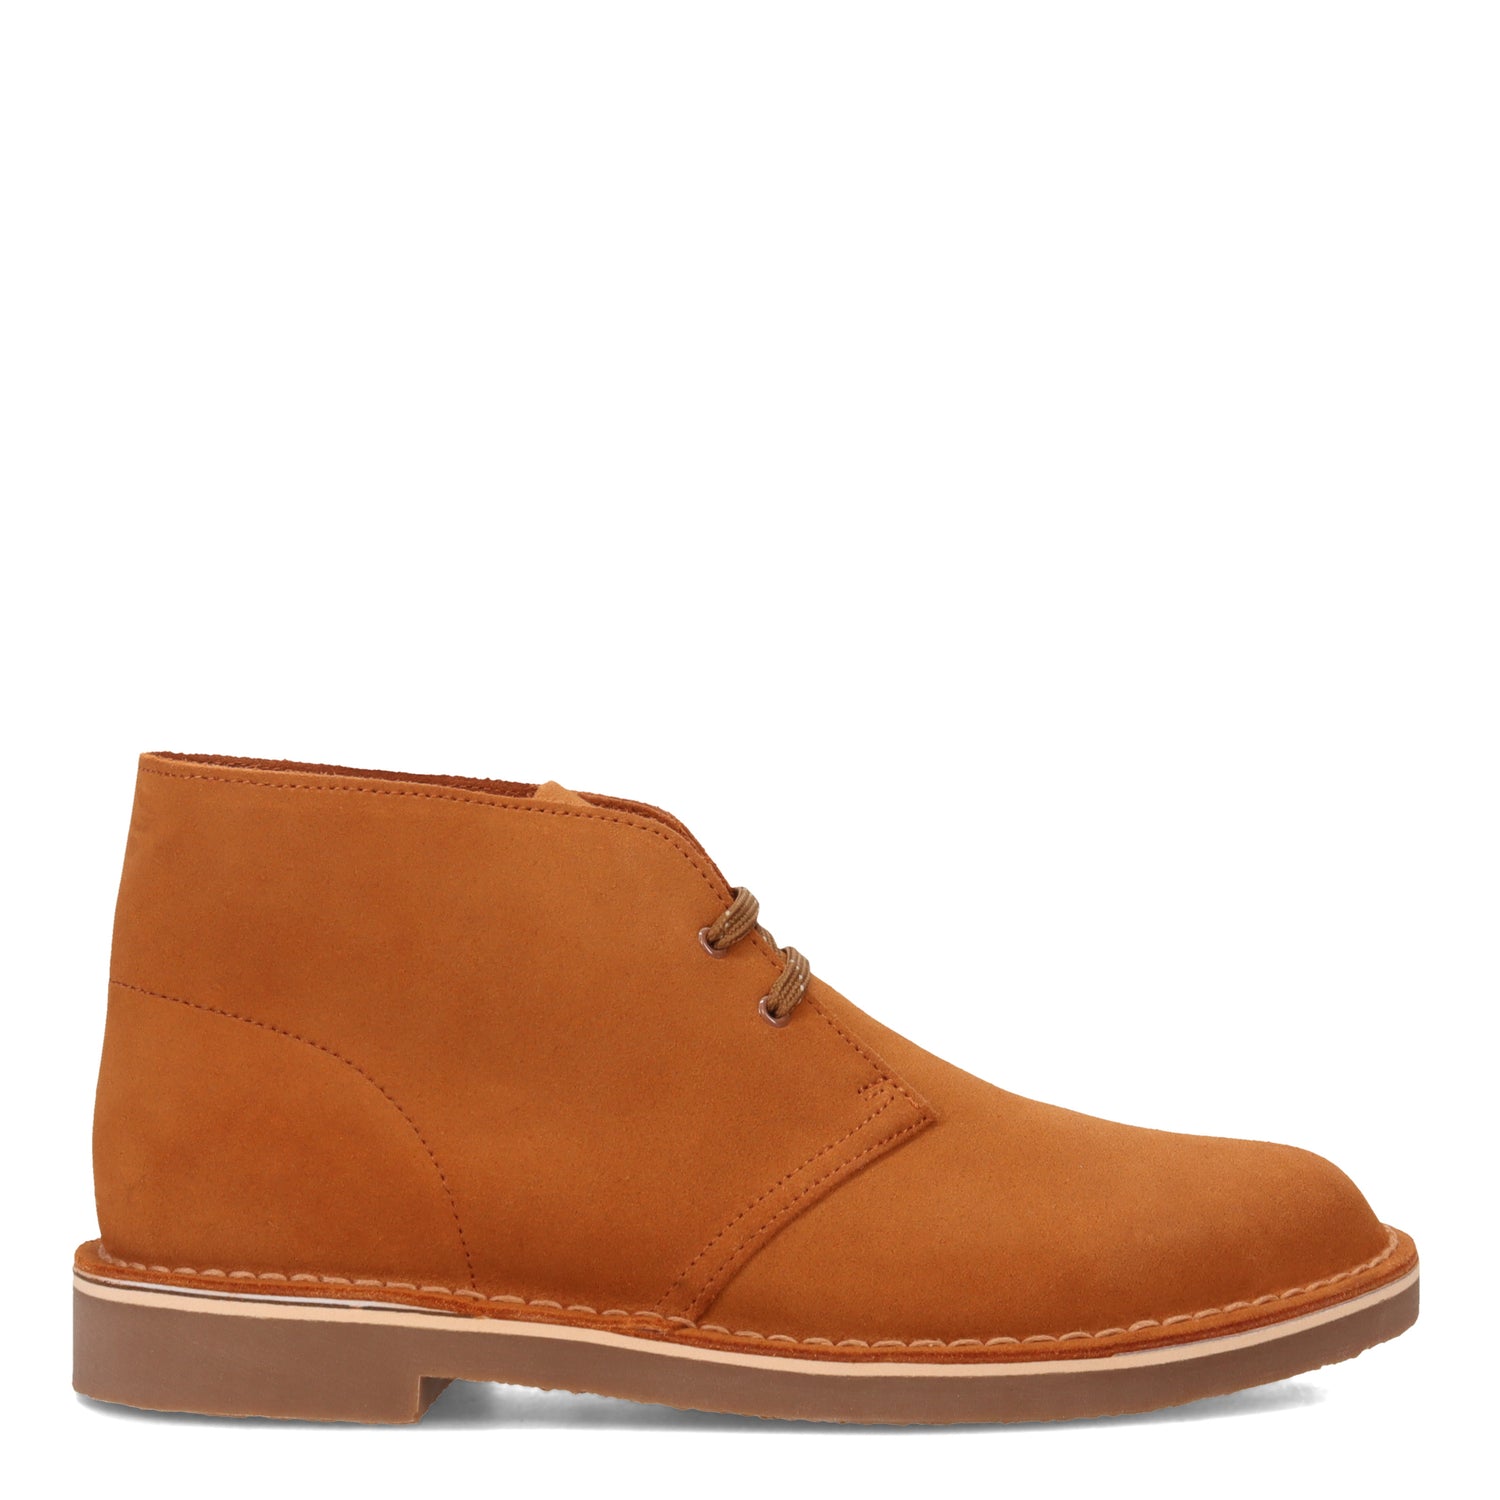 Peltz Shoes  Men's Clarks Bushacre 3 Chukka Boot TAN SUEDE 26168651